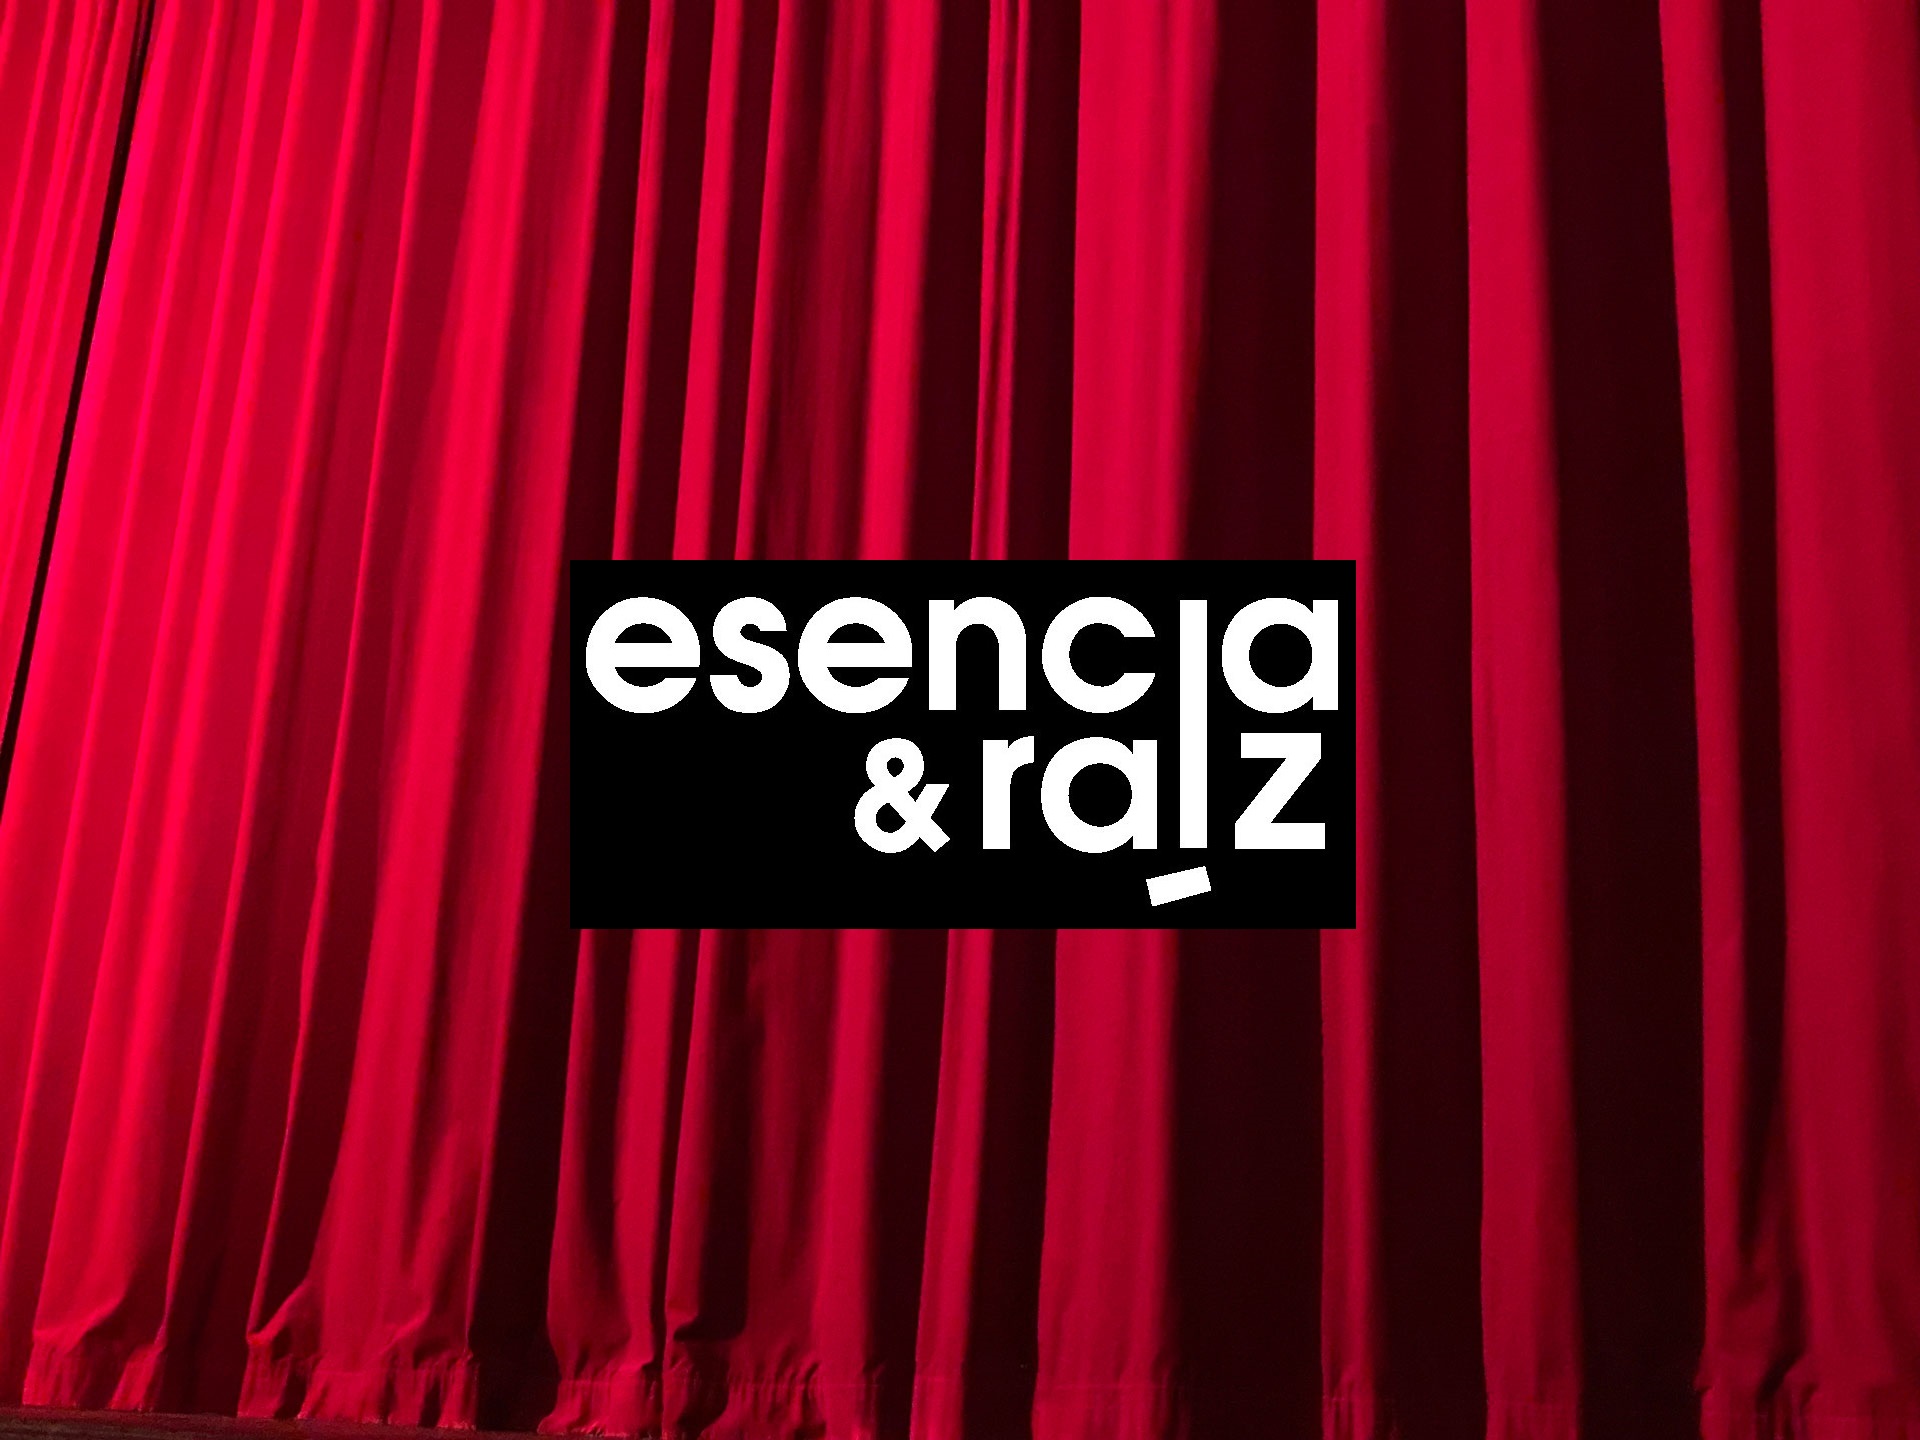 Vacaciones - Esencia y Raíz - Compañía de flamenco en Madrid - Lola García - Madrid flamenco - Raíces y eventos